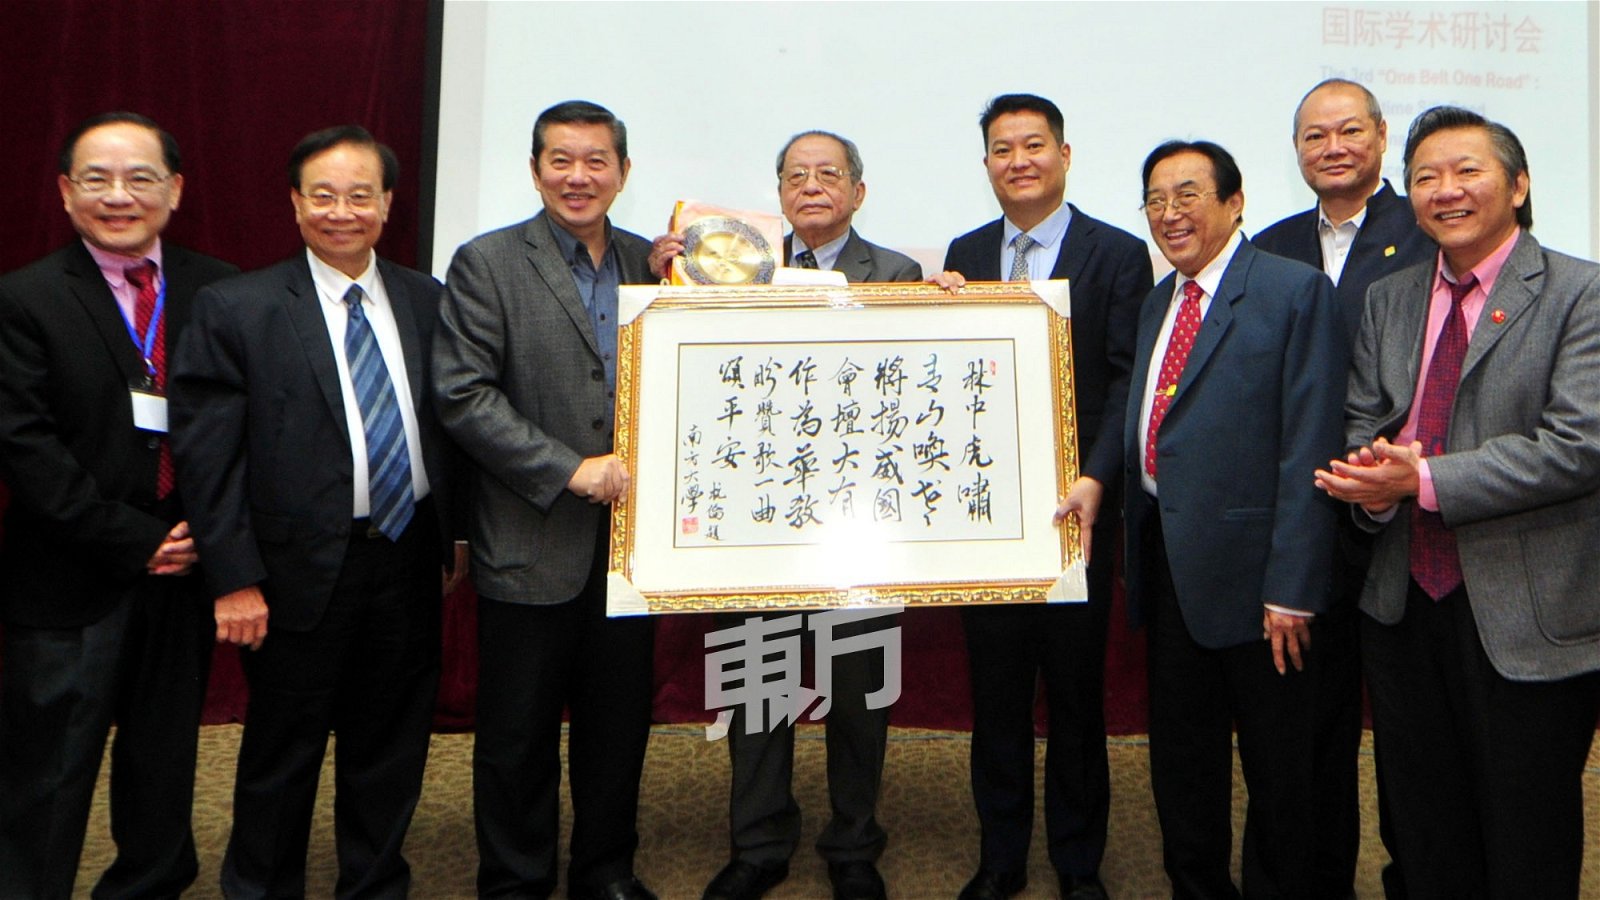 林吉祥（左4）接领南方大学学院领导层赠送纪念品。左起为王润华、张瑞发、莫泽浩、陈洺臣、黄循积、刘国胜及祝家华。（摄影：杨金森）